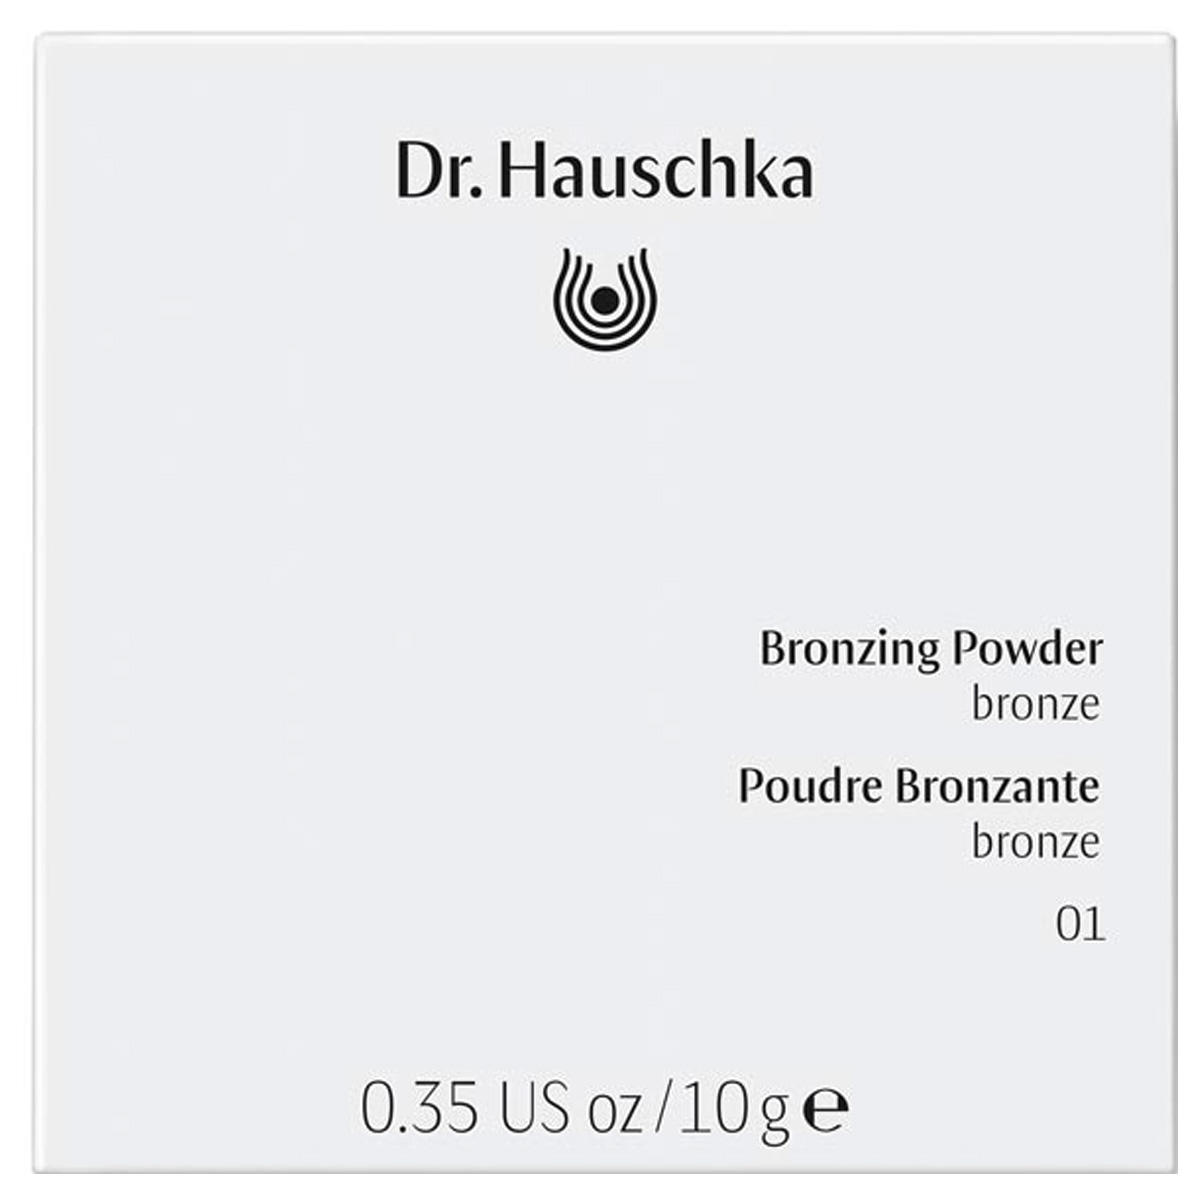 Dr. Hauschka Bronzing Powder 01 brons, inhoud 10 g - 3